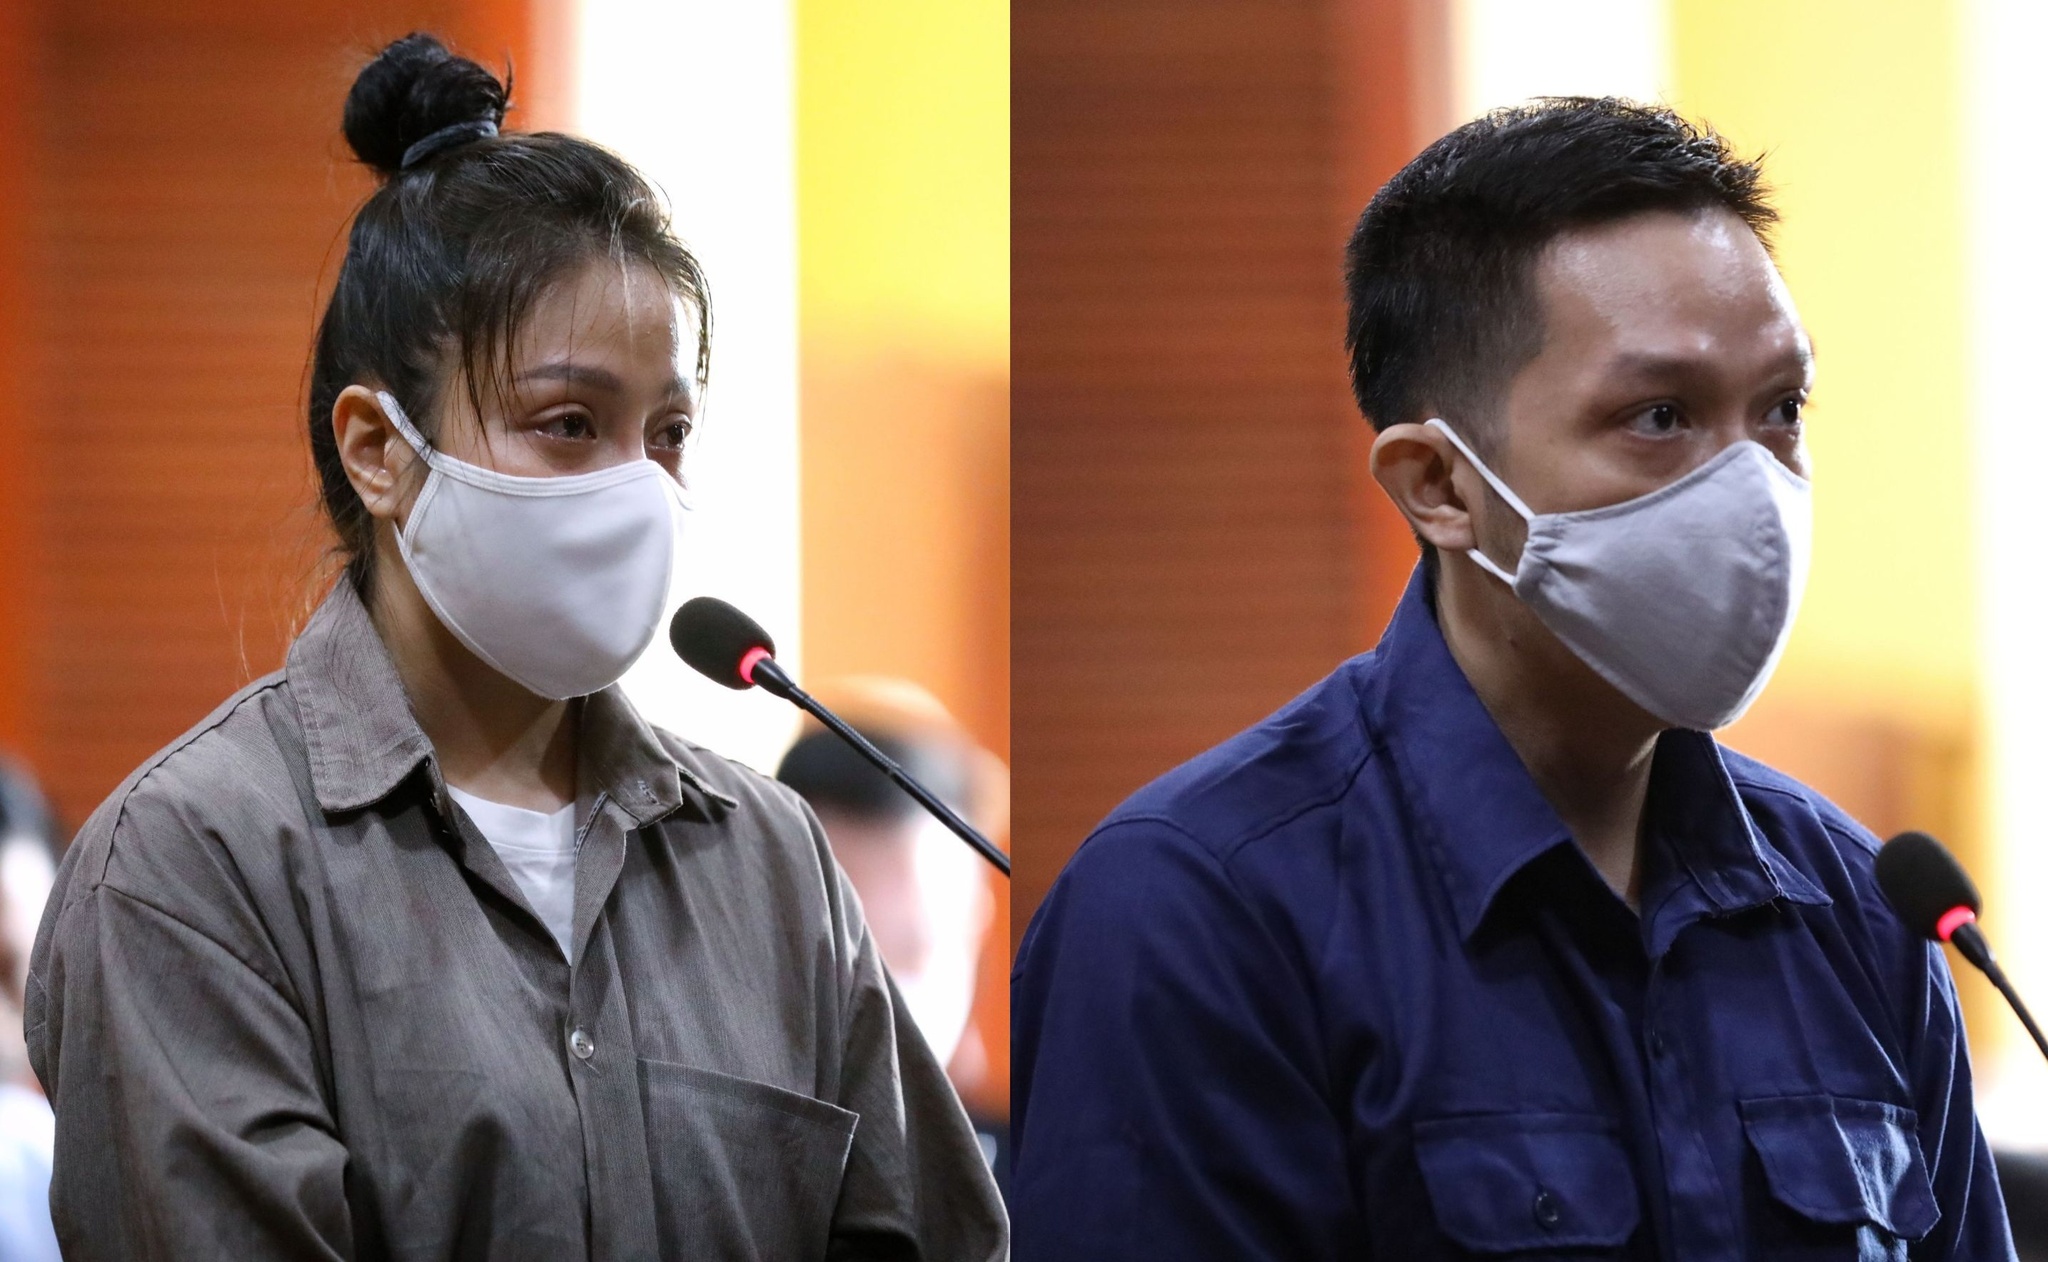 Gia đình bé gái 8 tuổi kháng cáo, đề nghị xử lý Nguyễn Kim Trung Thái tội giết người